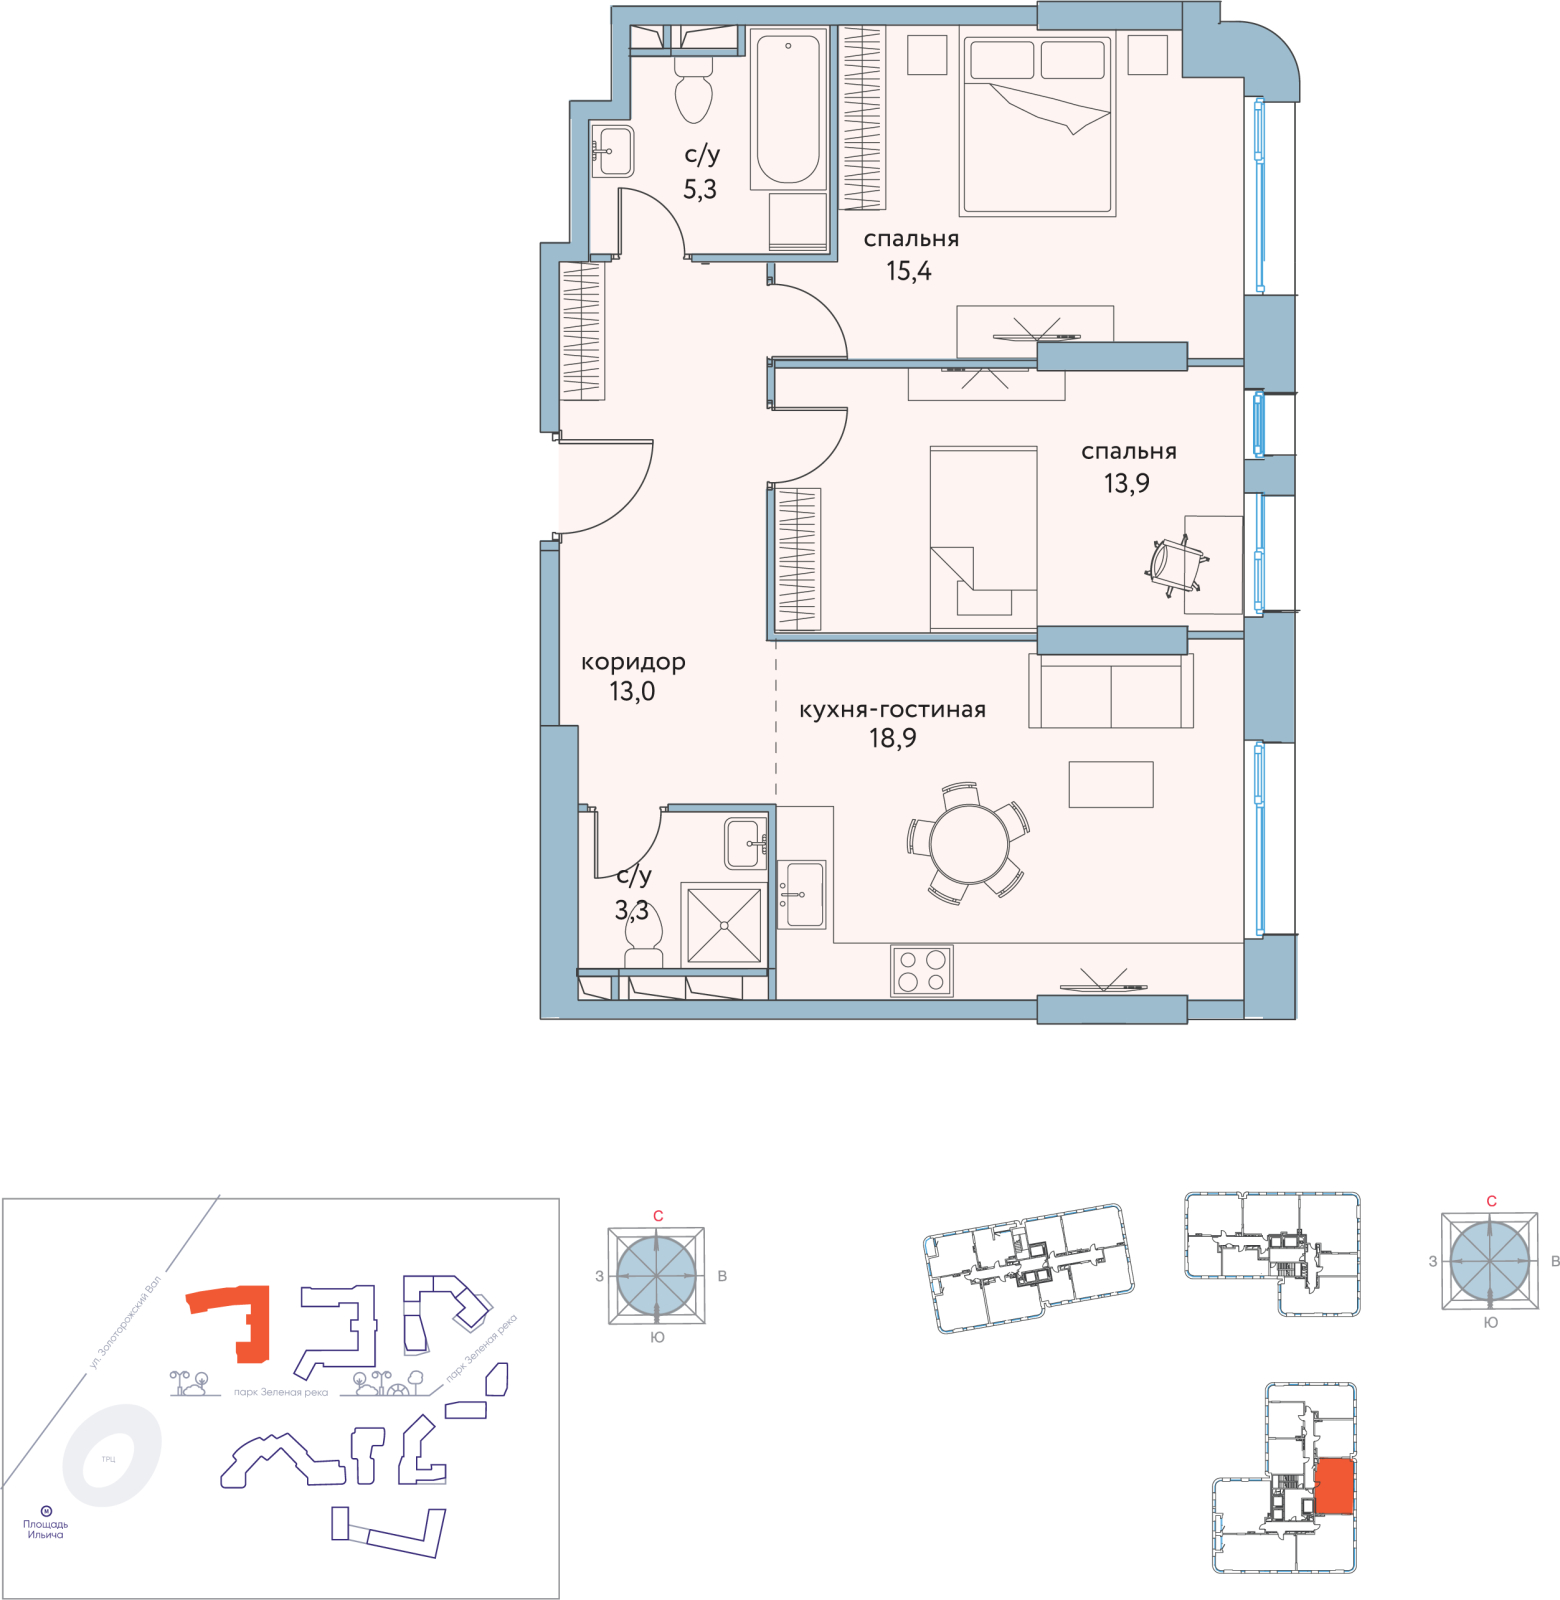 2-комнатная квартира в ЖК Триколор на 49 этаже в 1 секции. Дом сдан.